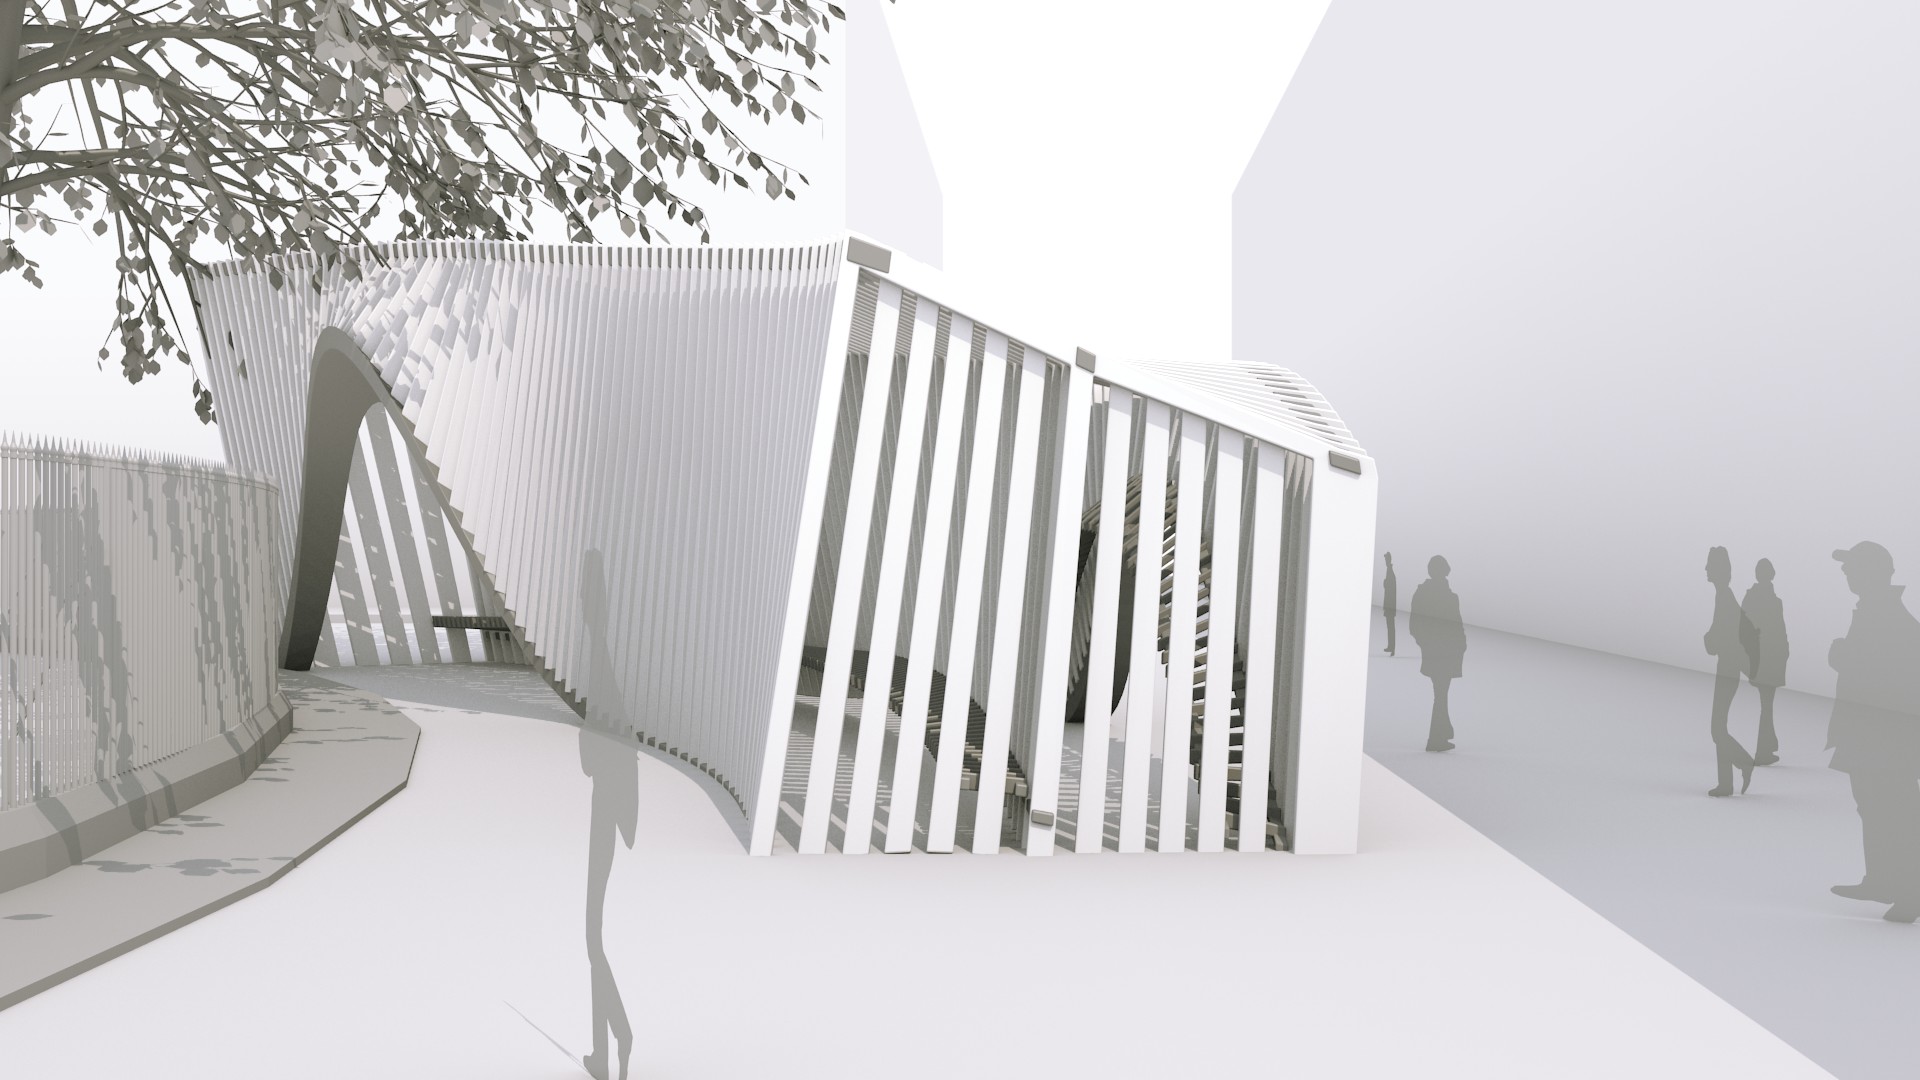 Architectural Concept Design - Creating a pavilion - BlenderNation